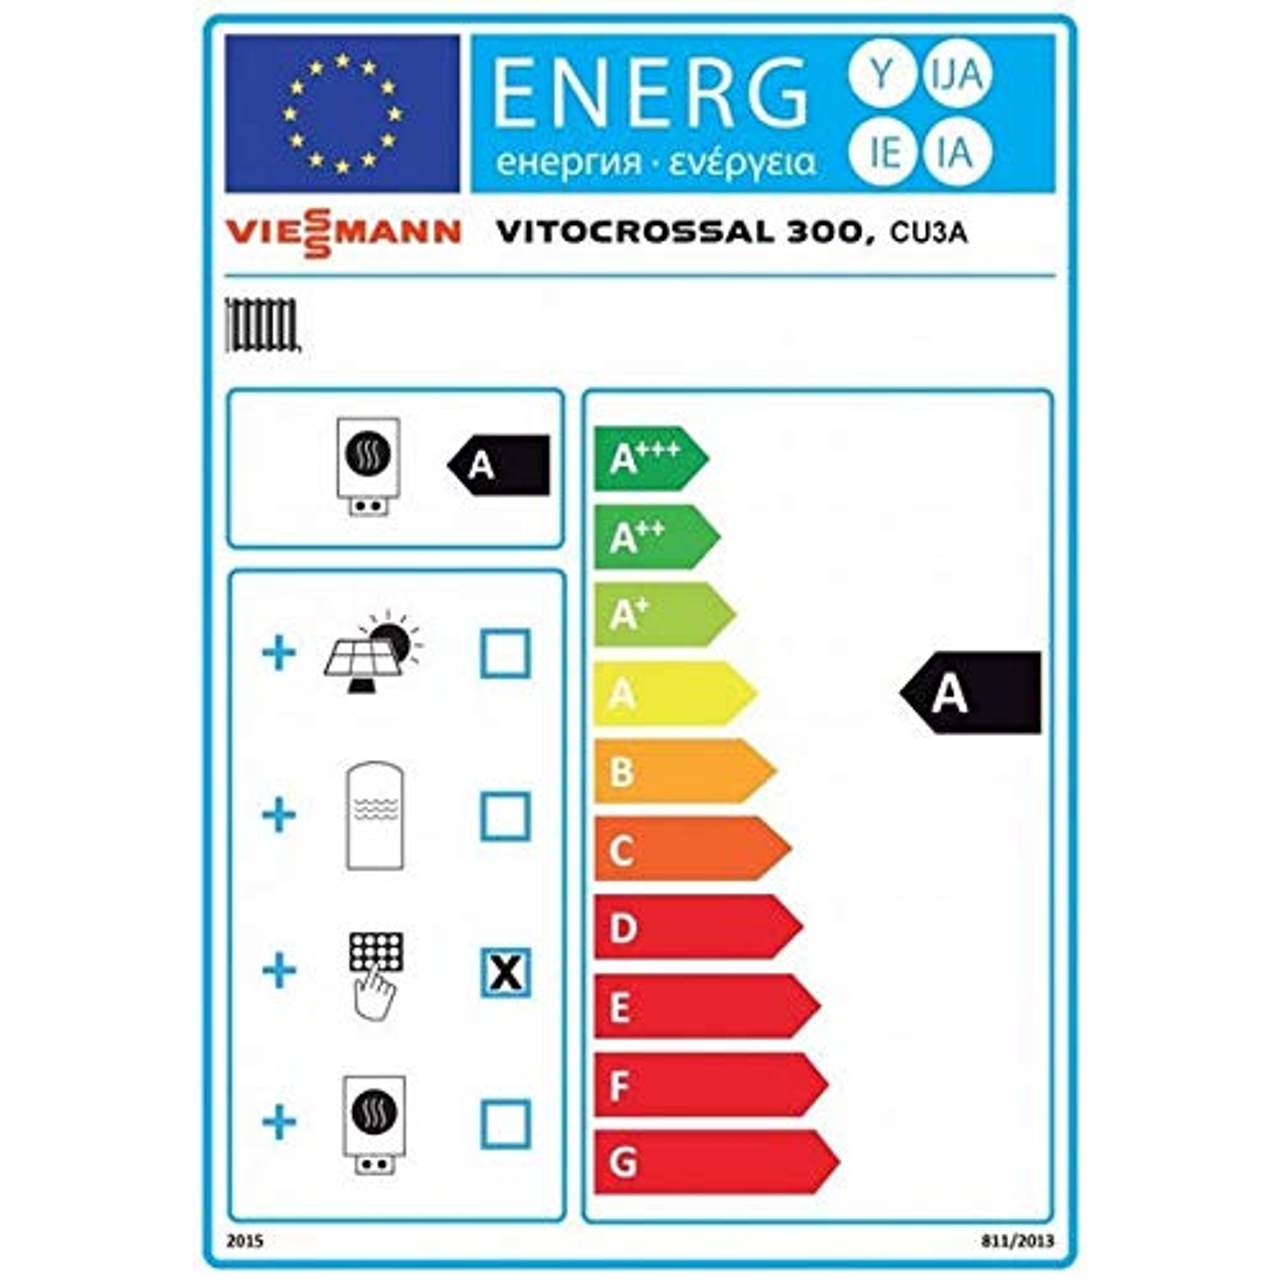 Viessmann Vitocrossal 300 35 kW Gas-Brennwertkessel Vitotronic 200 Heizkessel